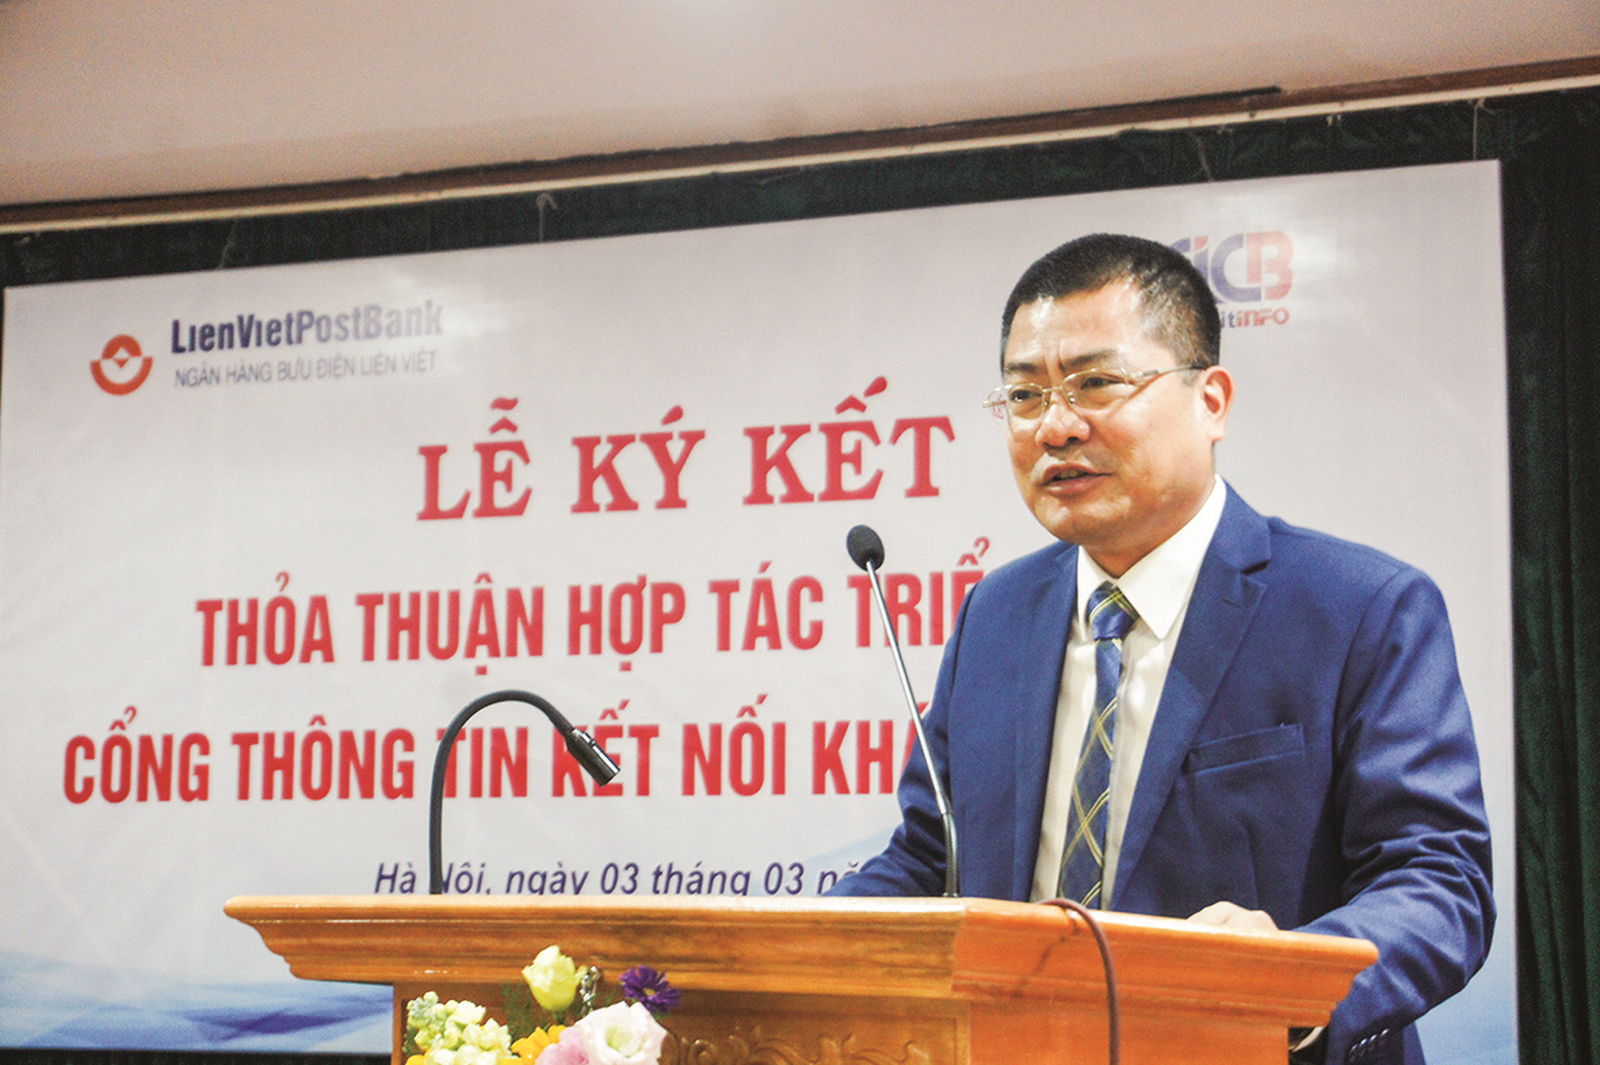 Trung tâm Thông tin tín dụng Quốc gia Việt Nam: Kết nối cùng LienVietPostBank